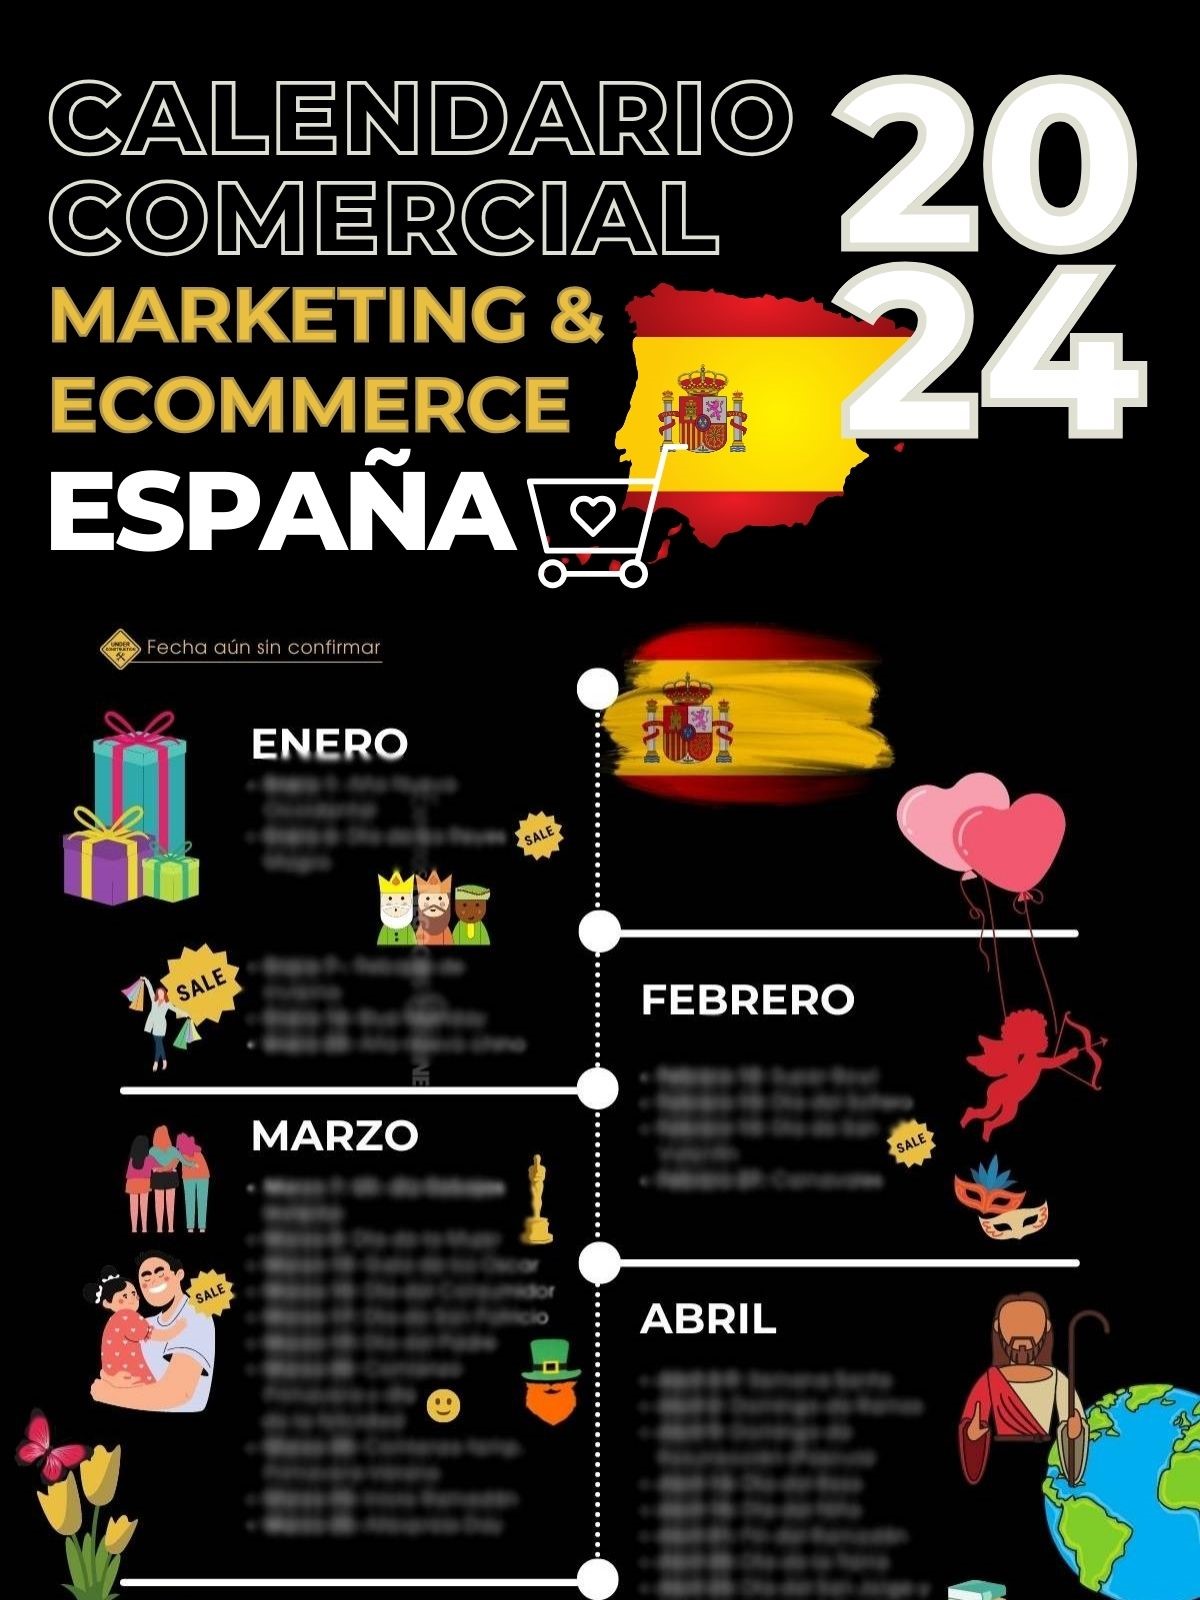 Descargar calendario marketing España 2023